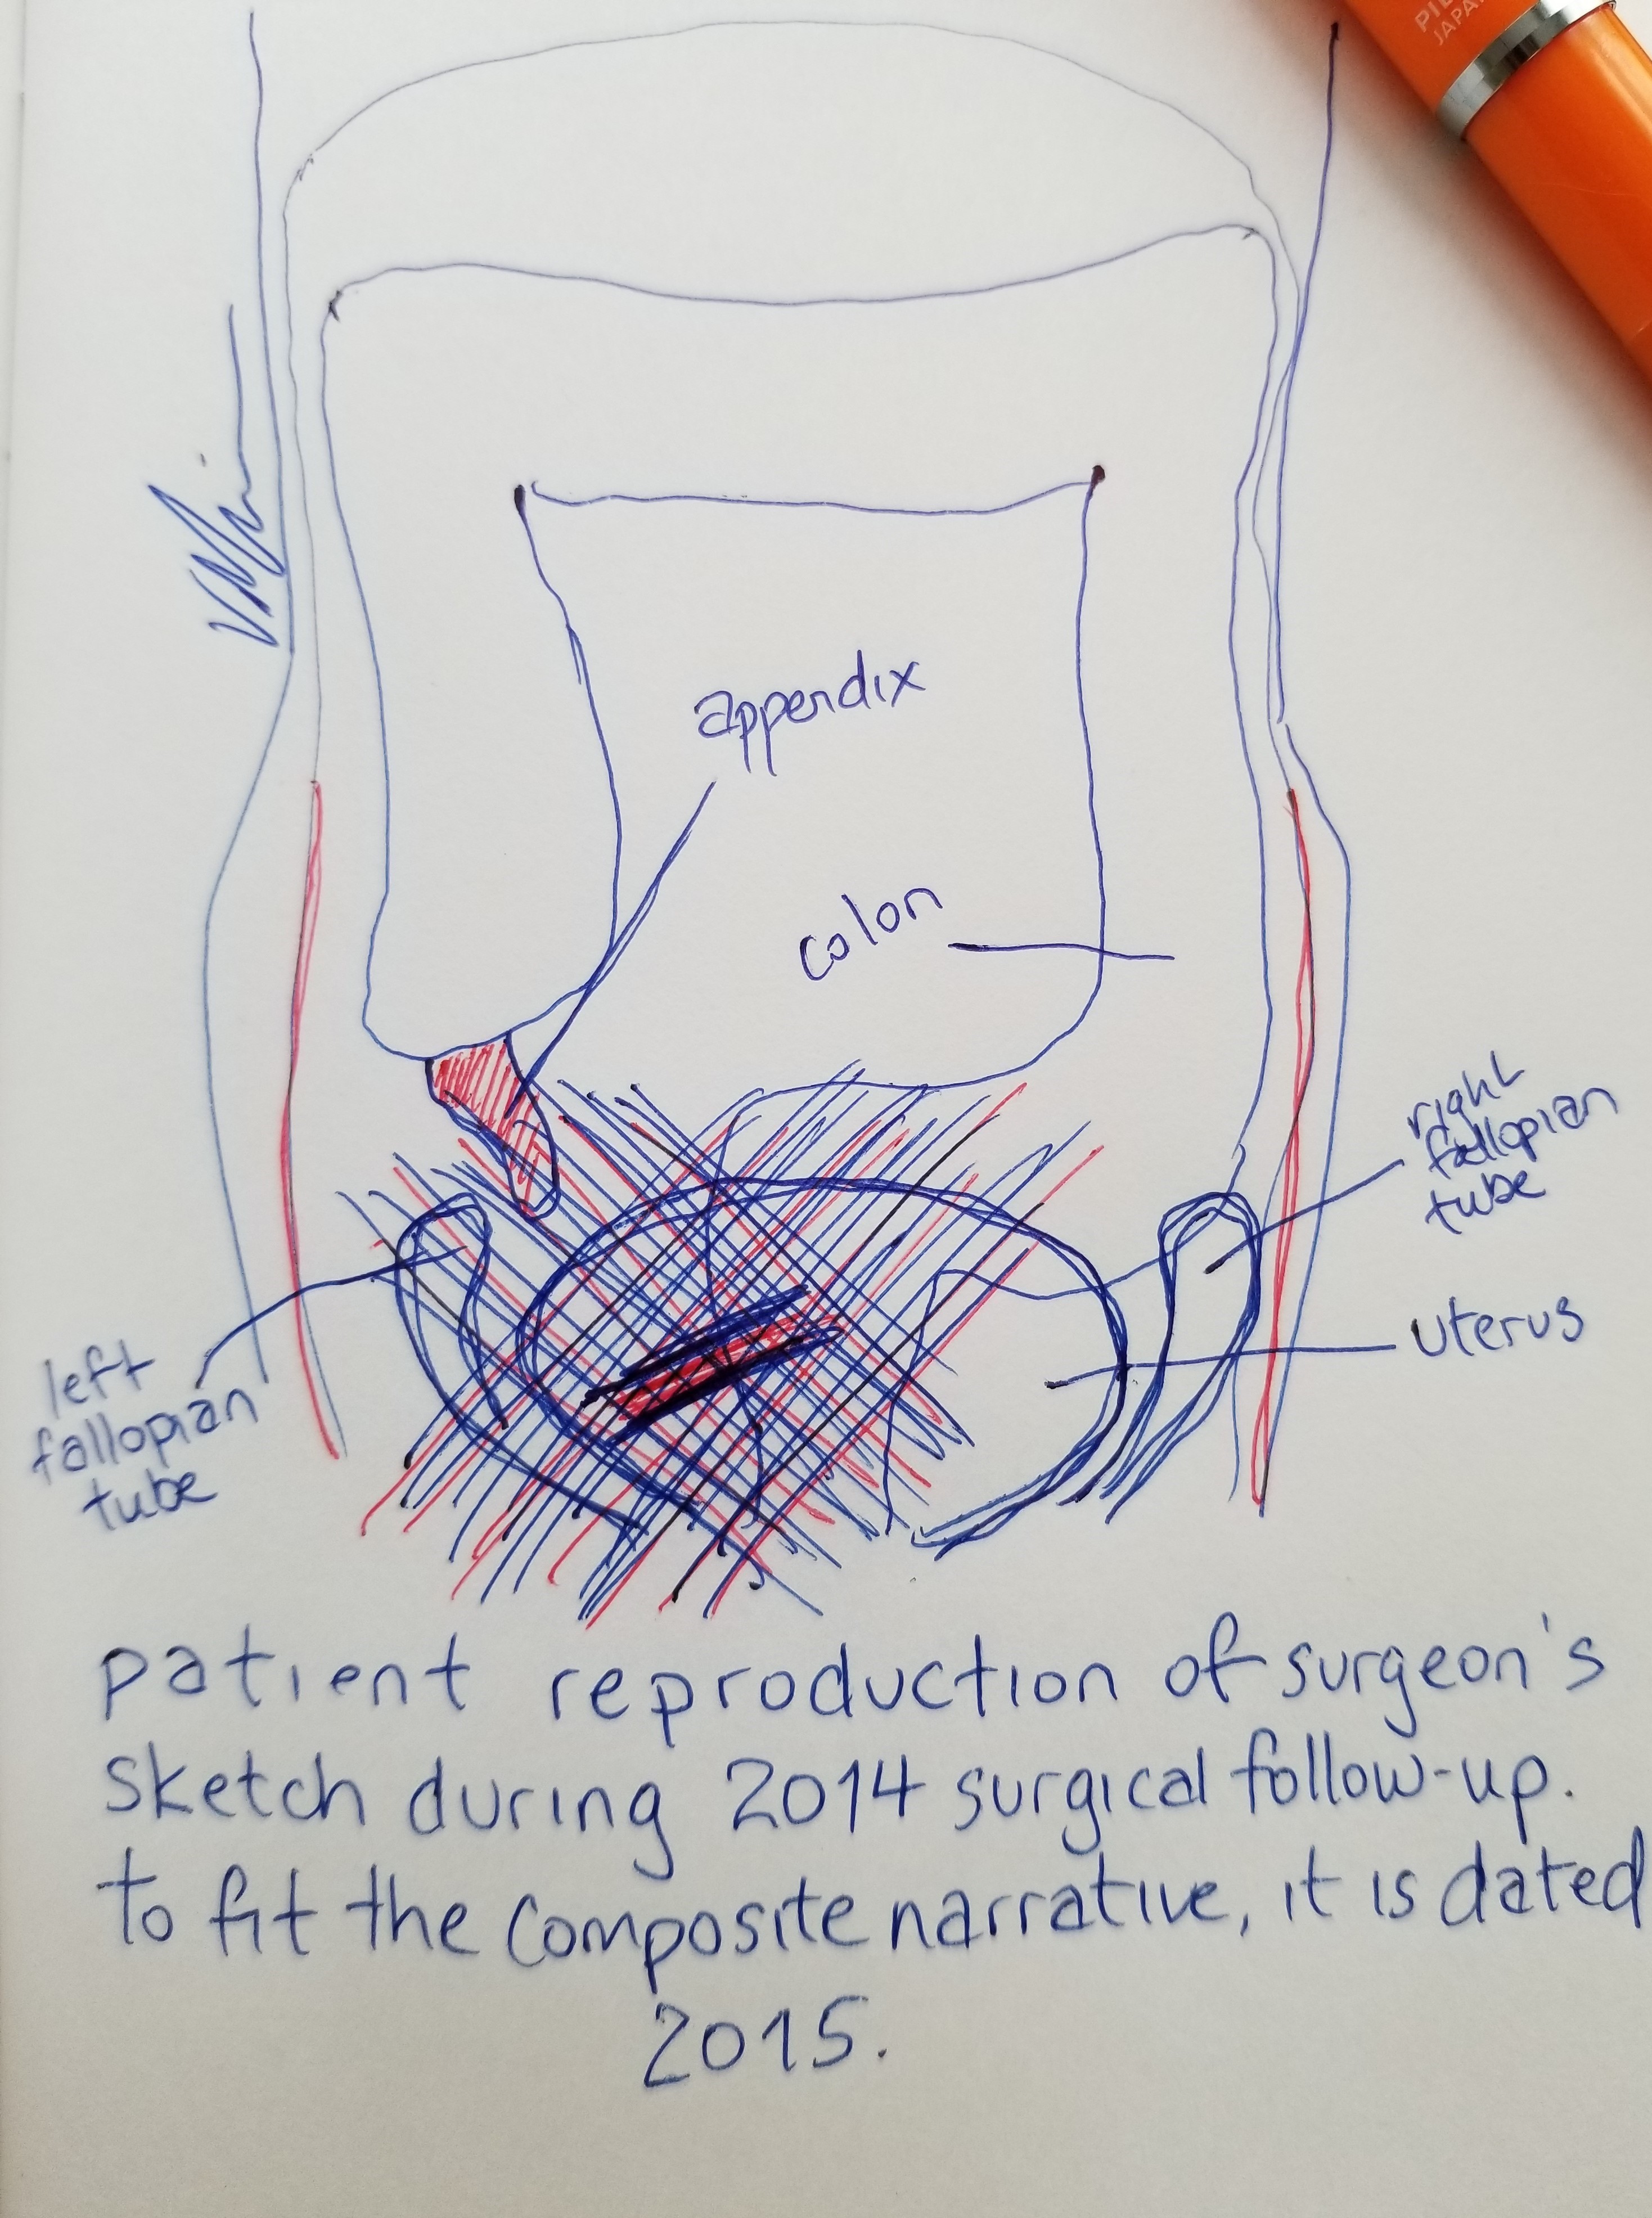 Abdomen, peritoneum, colon, appendix, uterus, and fallopian tubes in blue and red ink.